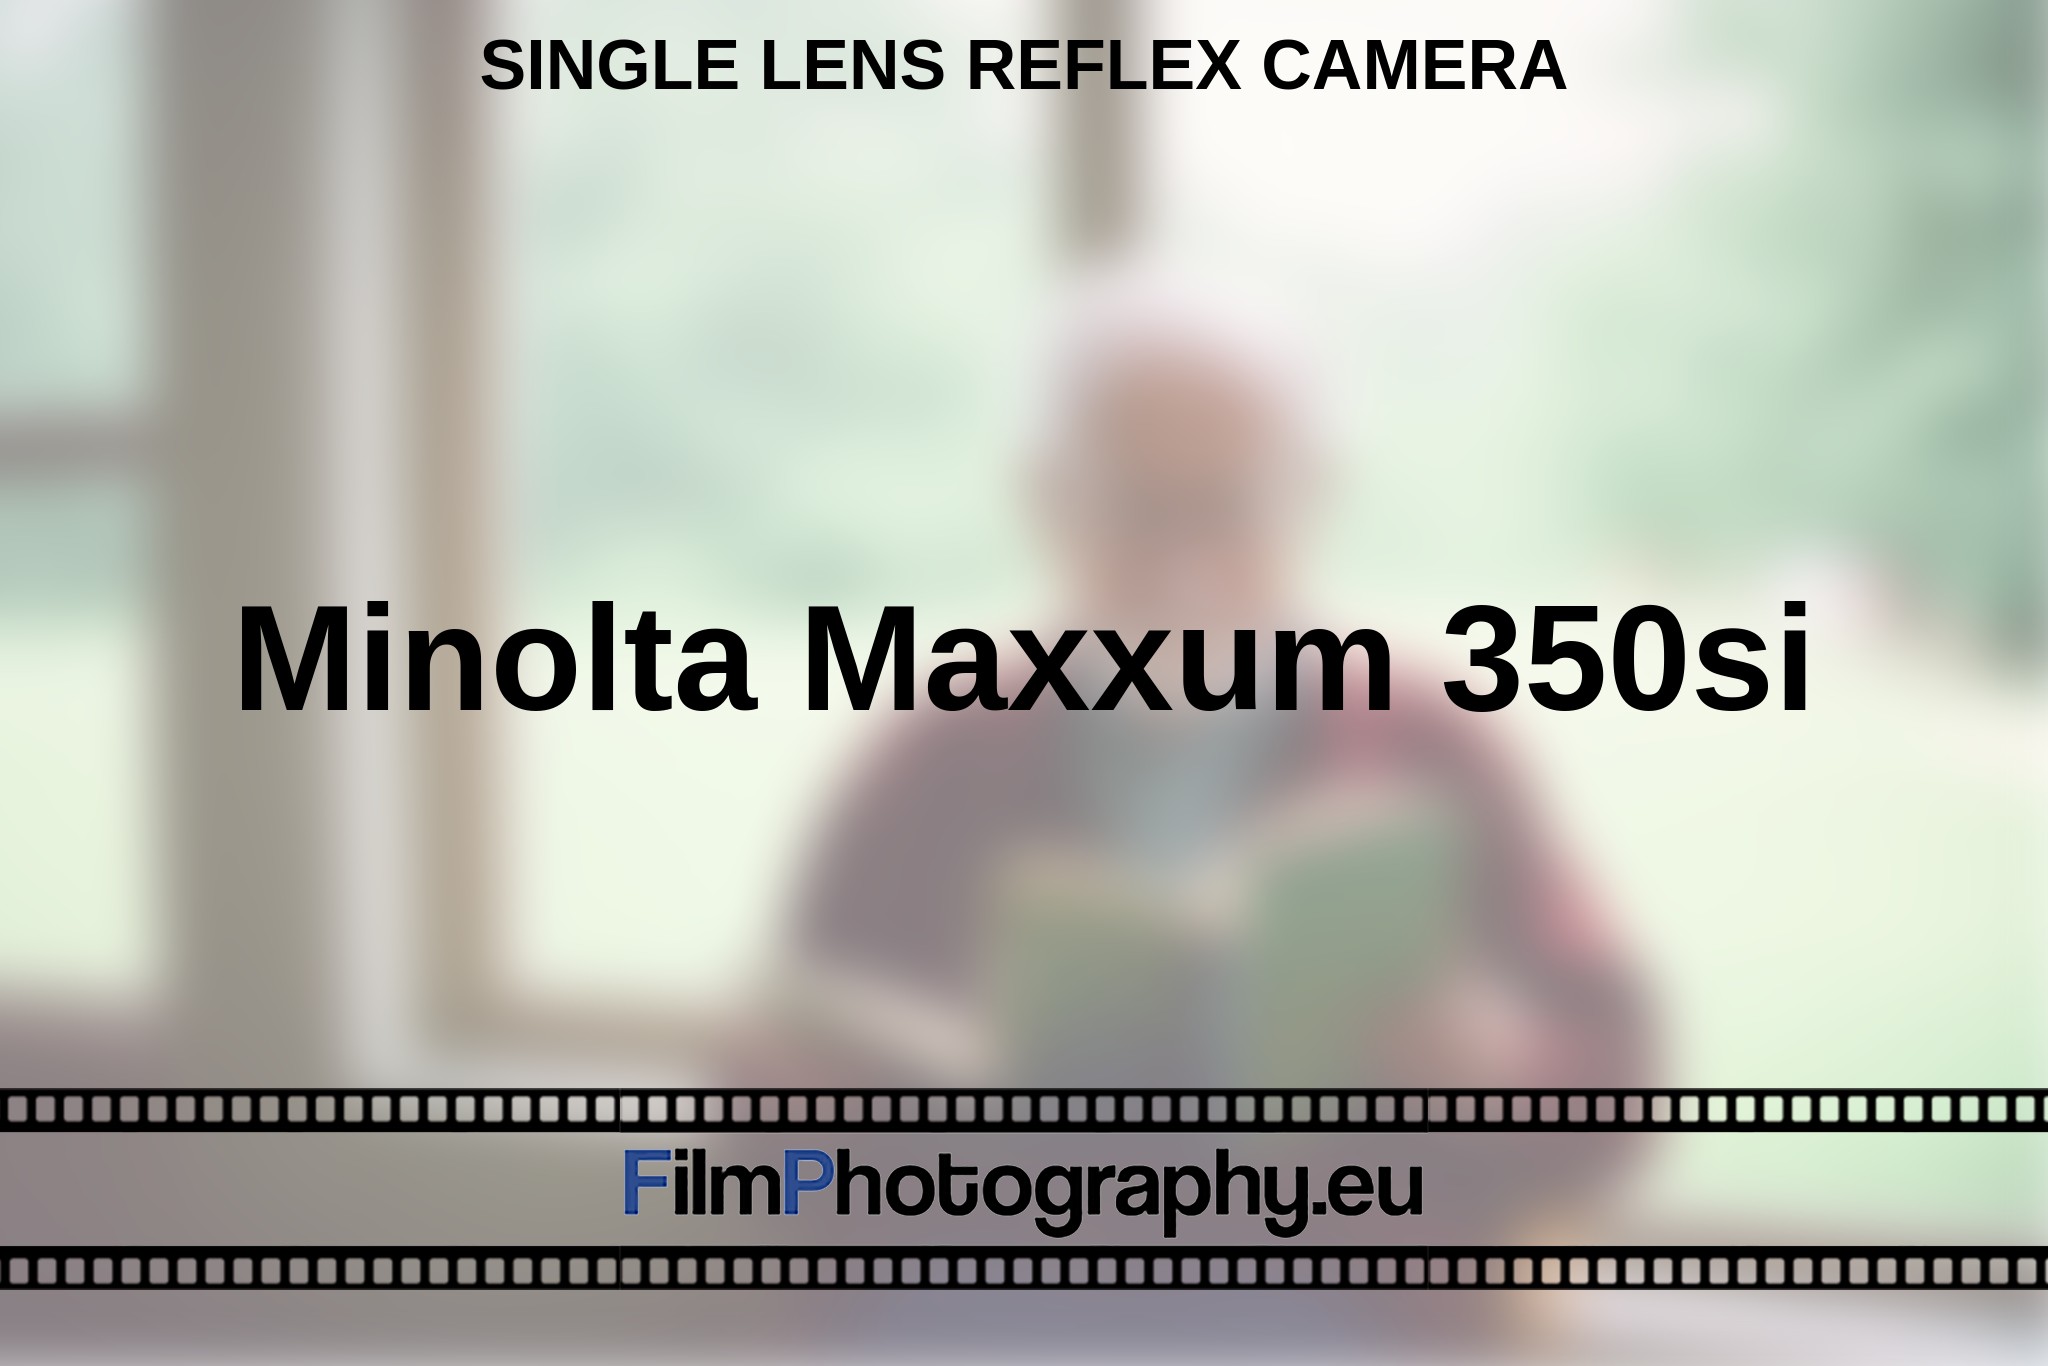 minolta-maxxum-350si-single-lens-reflex-camera-en-bnv.jpg